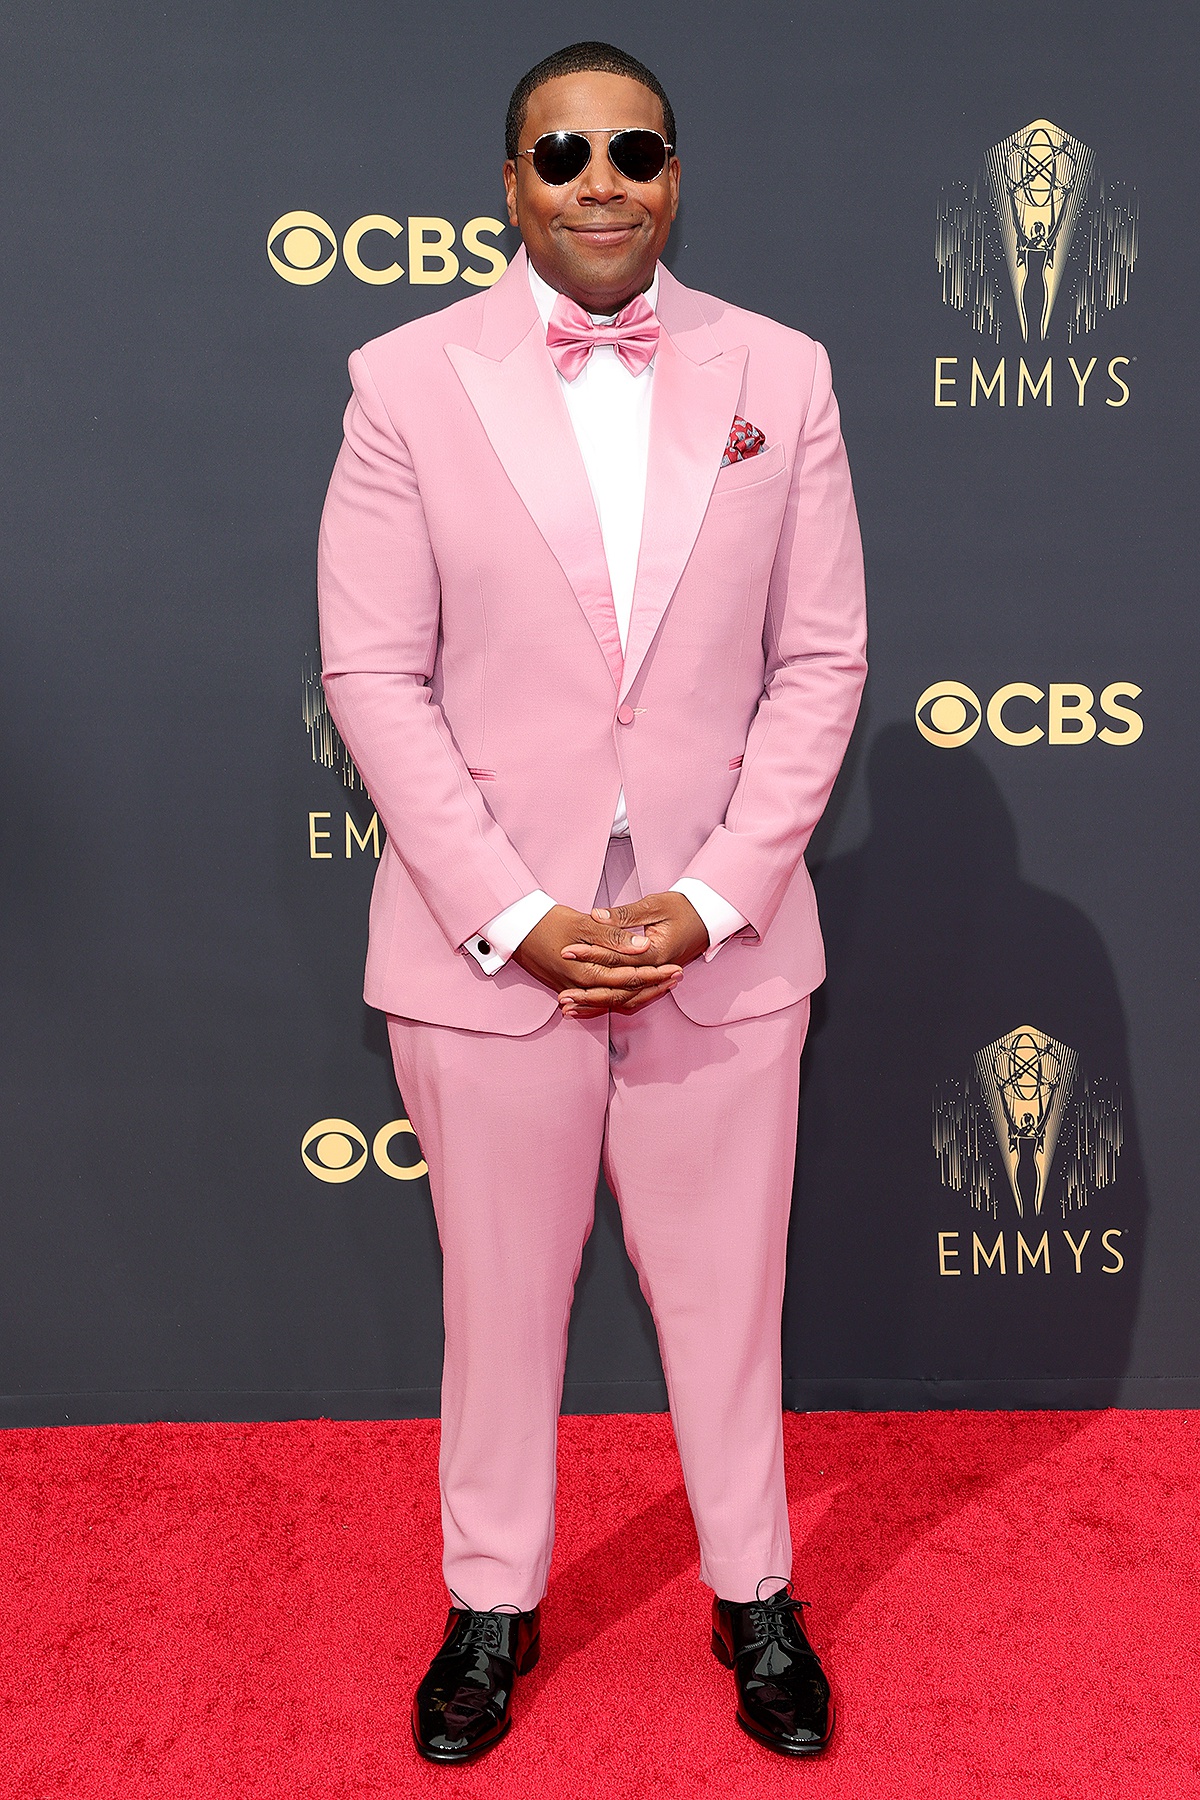 Kanan Thompson trở thành tâm điểm thảm đỏ với bộ suit màu hồng phấn, chiếc nơ hồng thắt cổ đồng điệu. Những bộ suit năm nay mang màu sắc tươi mới như thể hiện cho niềm vui của nước Mỹ sau khi chiến thắng đại dịch.